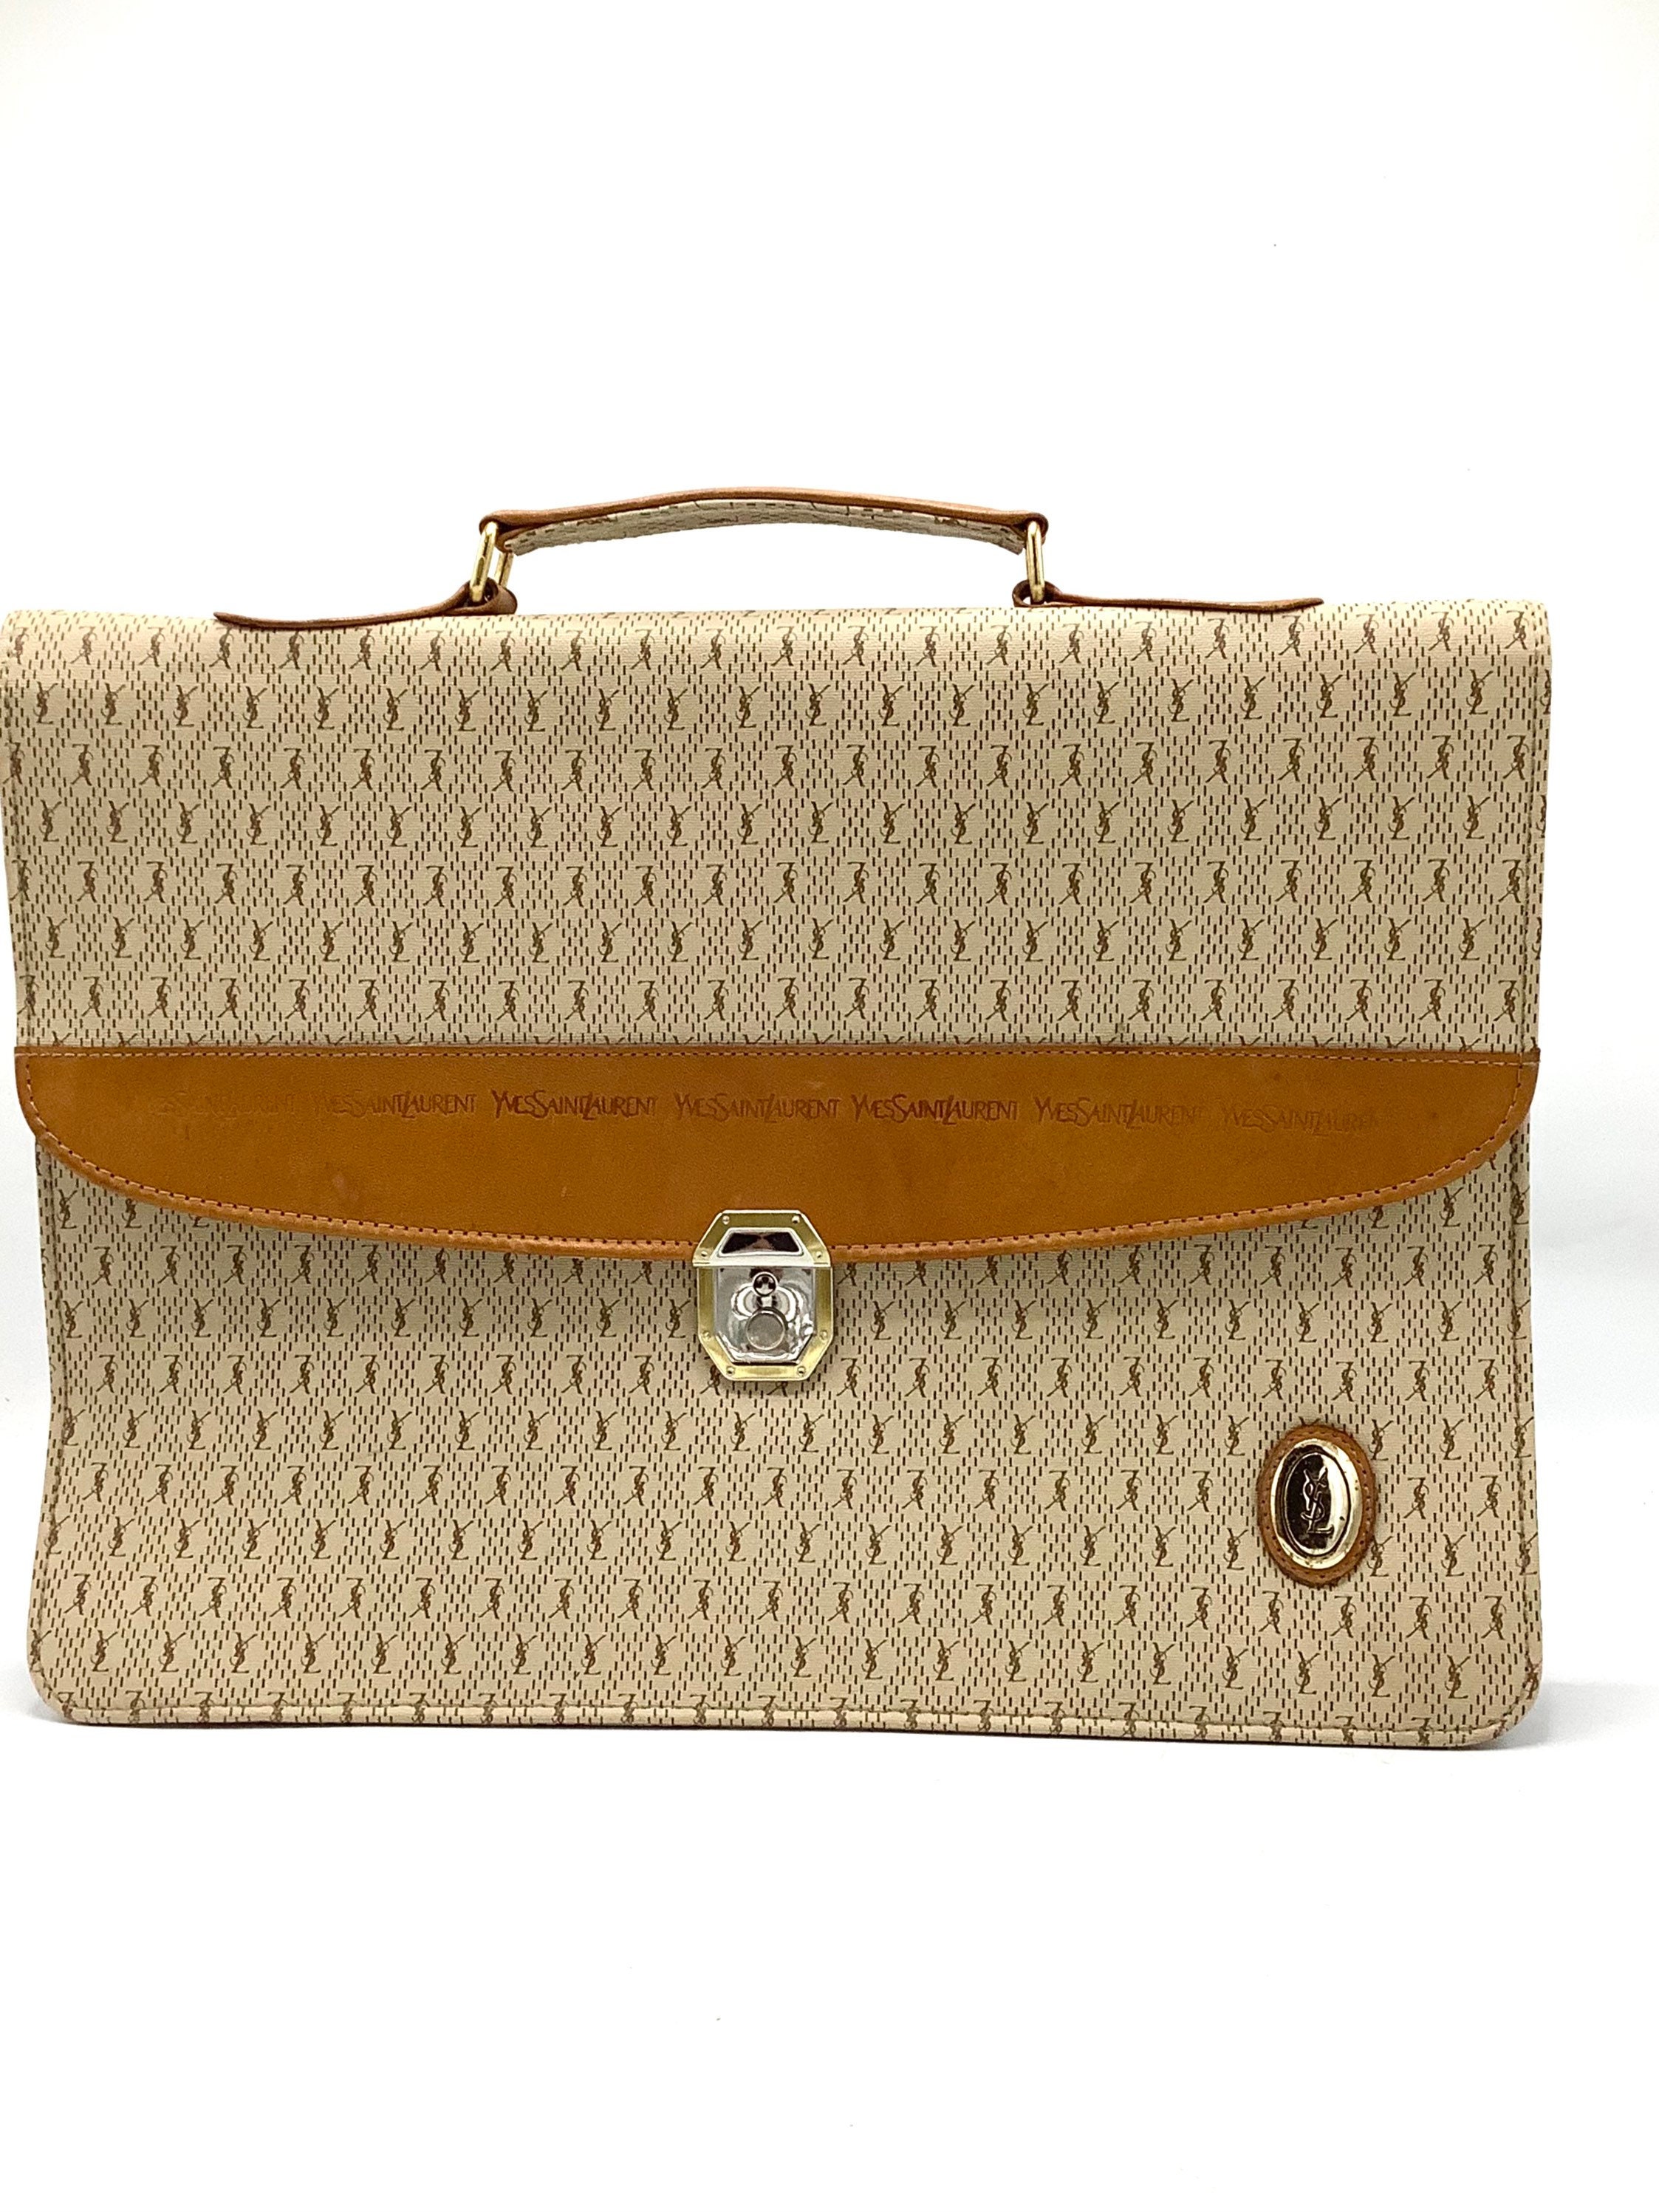 Louis Vuitton Designer Luggage Luxury French Stock Photo 721656622